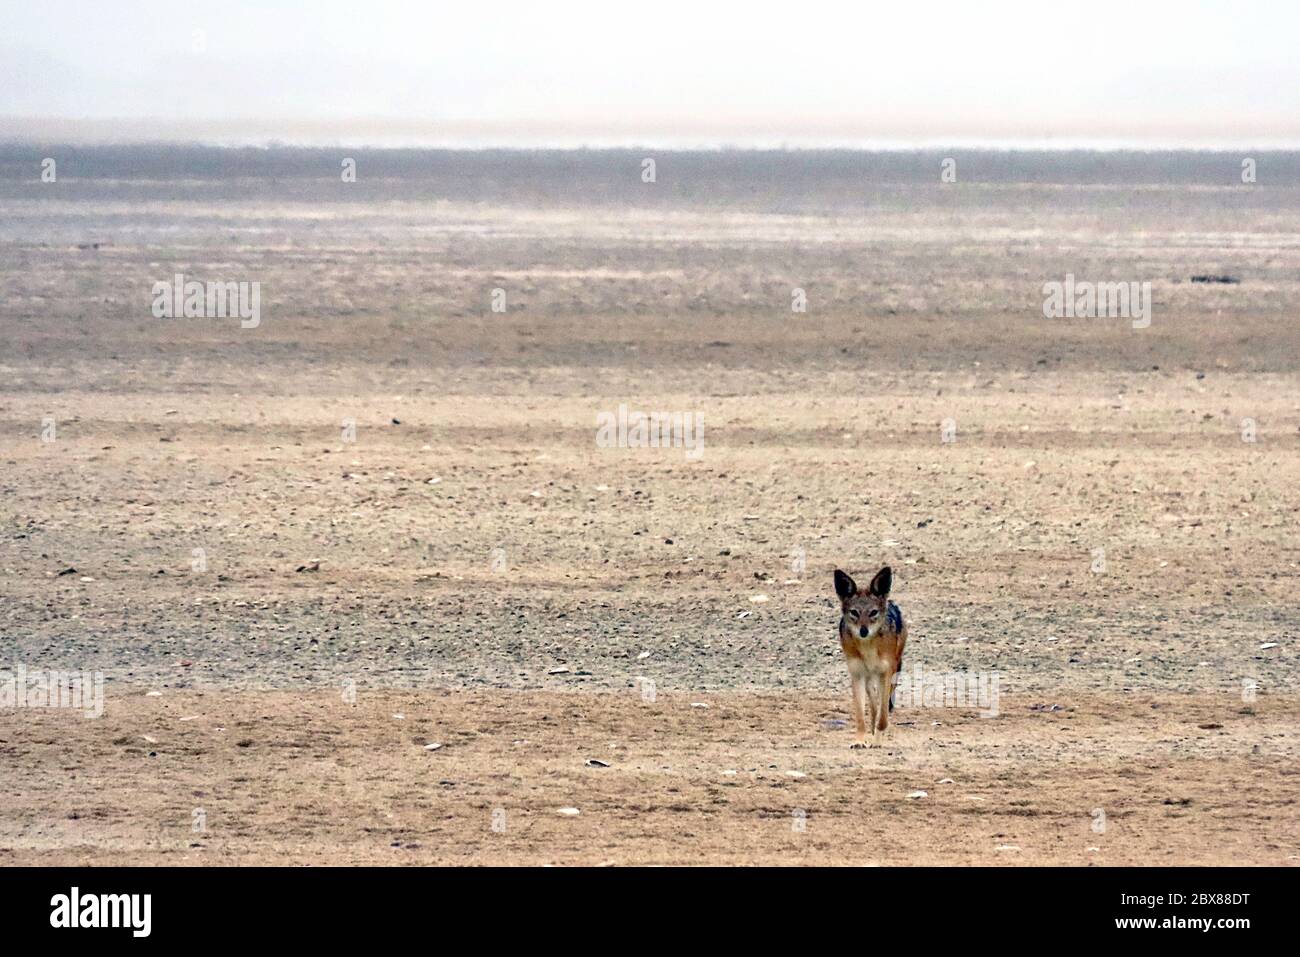 Un Jackal à dos noir (Canis mesomelas) regardant la caméra dans un désert sombre à la réserve de phoques de Cape Cross sur la côte des squelettes, en Namibie. Banque D'Images